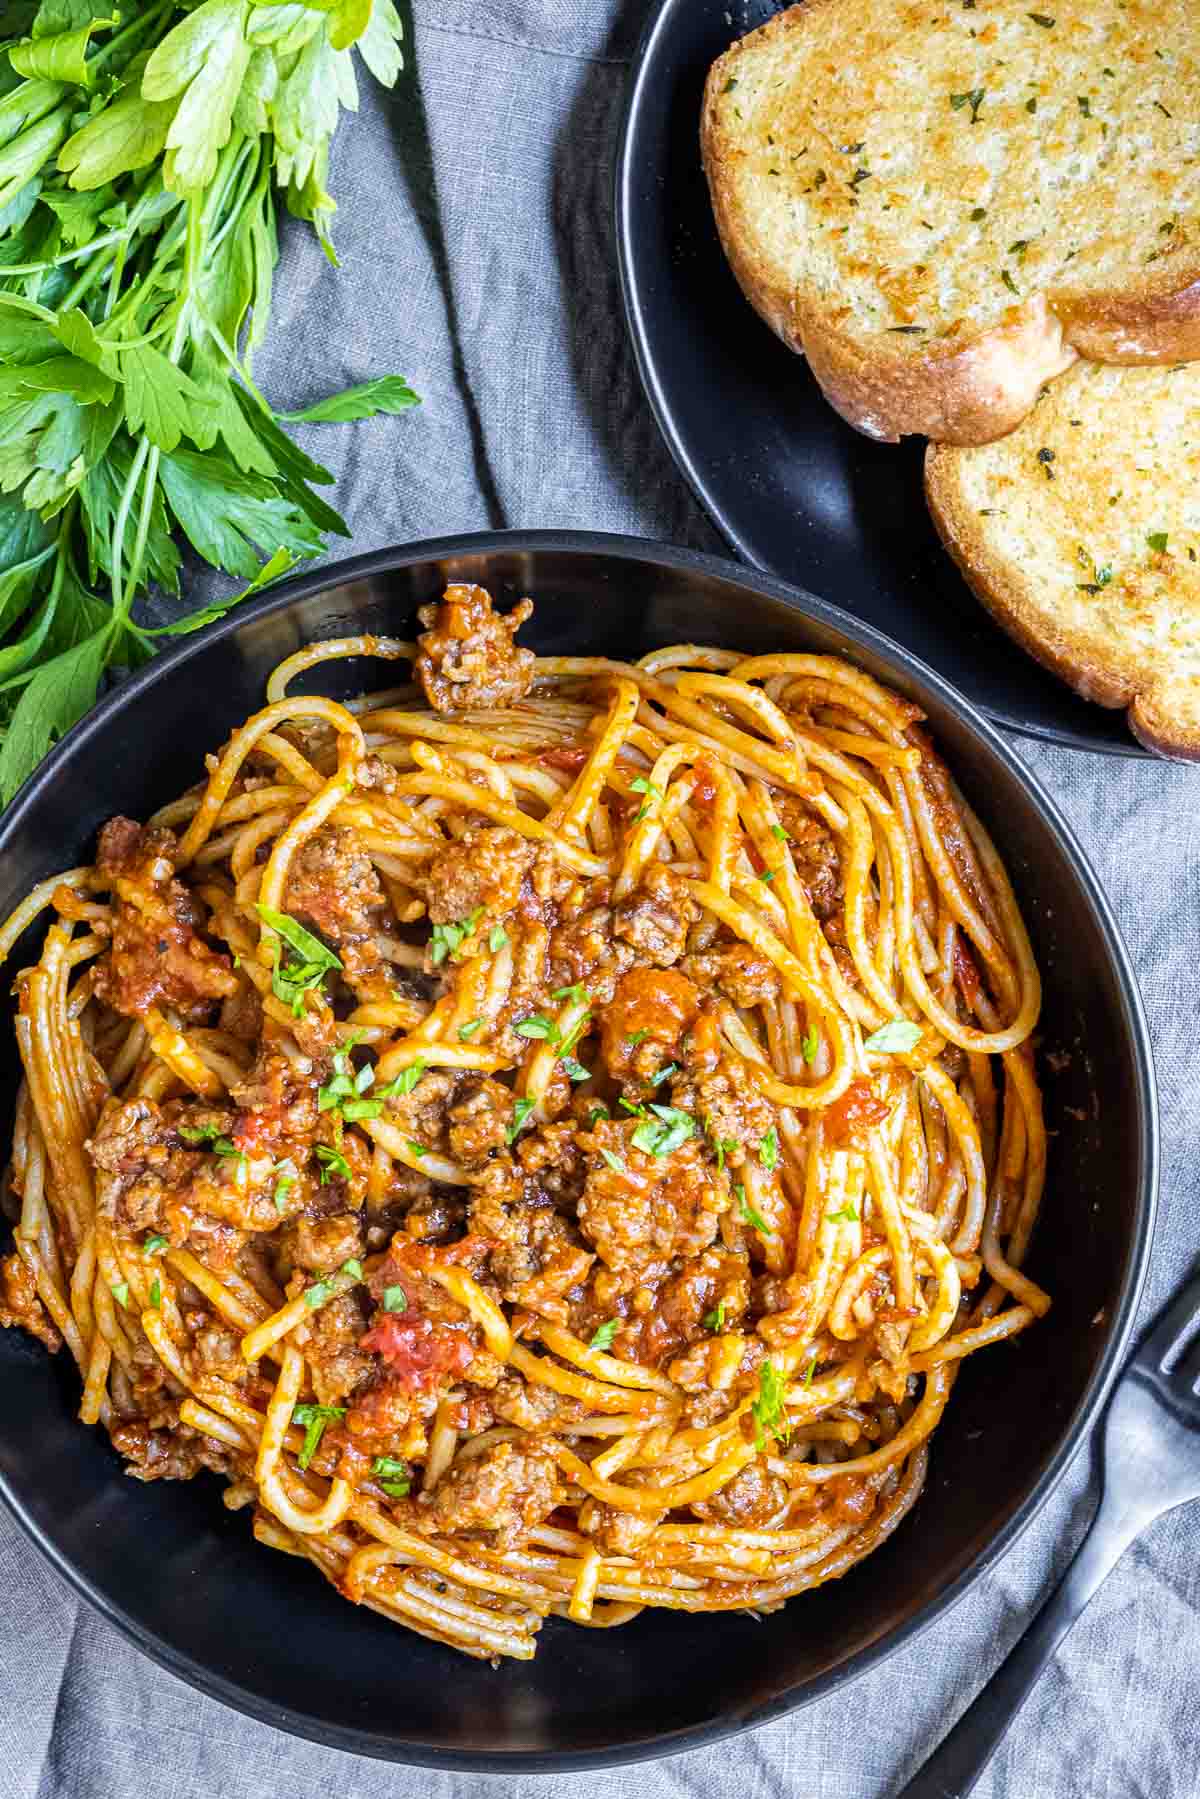 Instant Pot Spaghetti in a black bowl with garlic bread